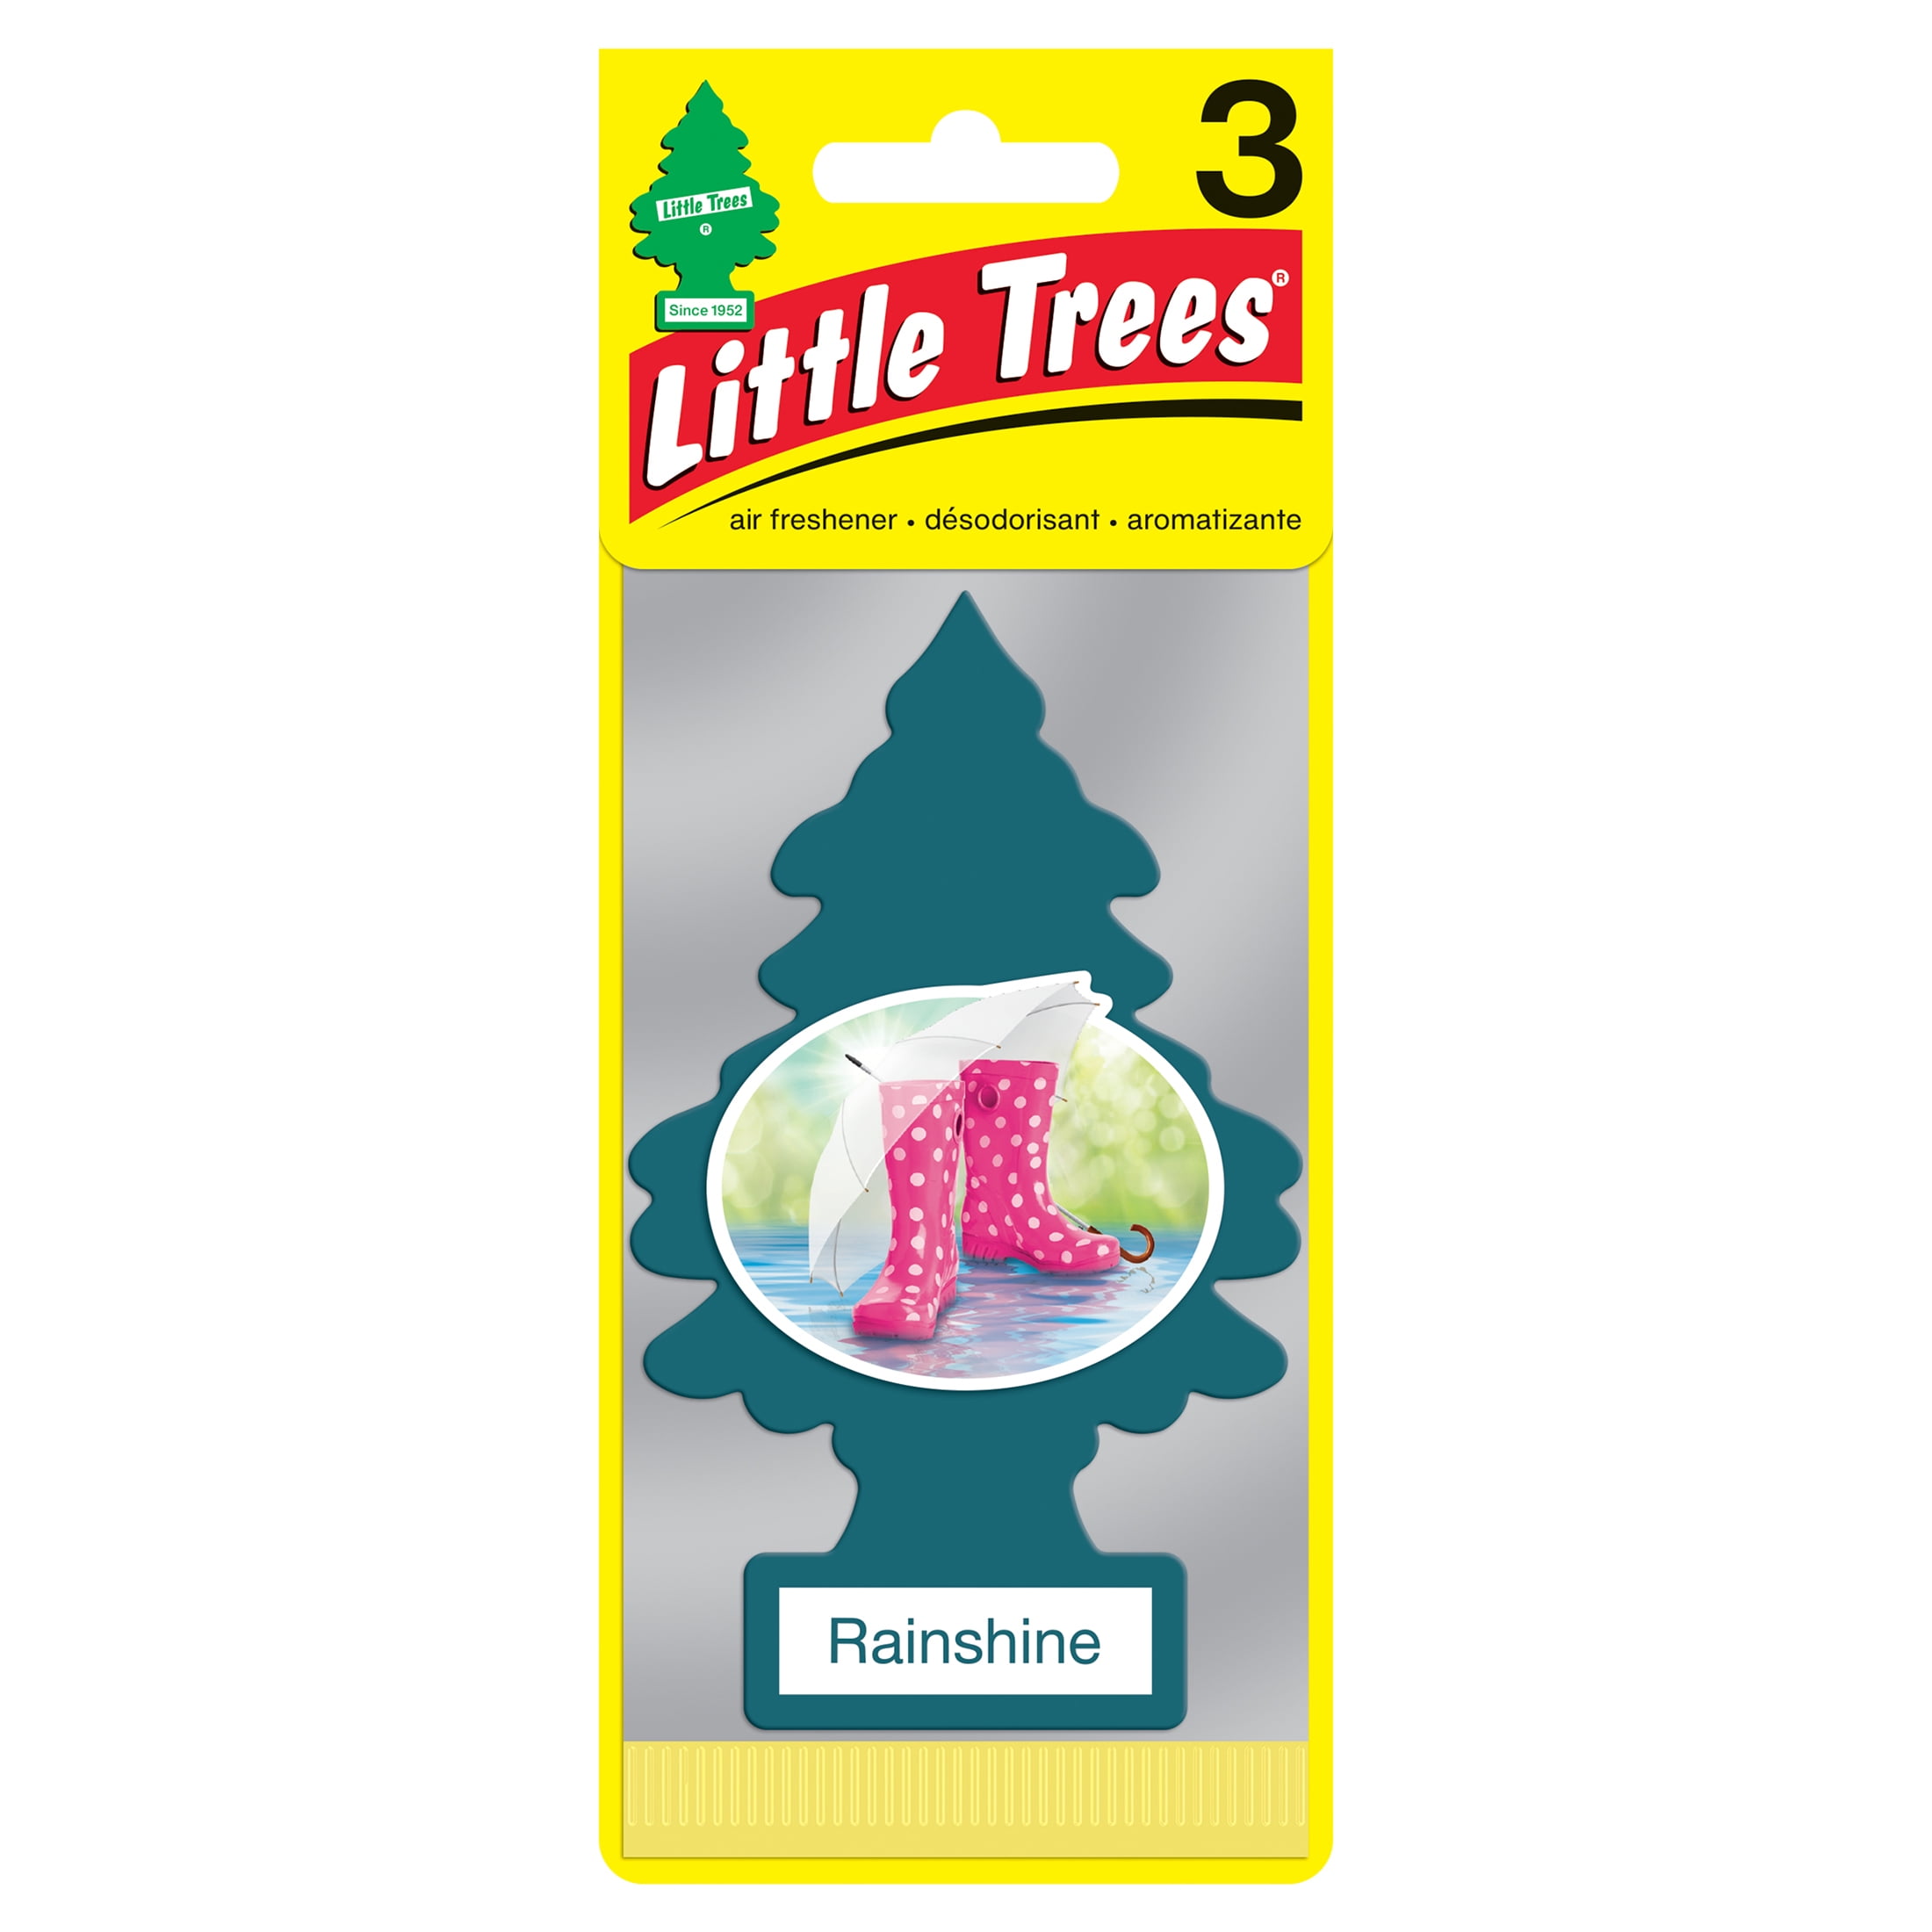 Little Trees Air Freshener Rainshine Fragrance, 3 Pack 